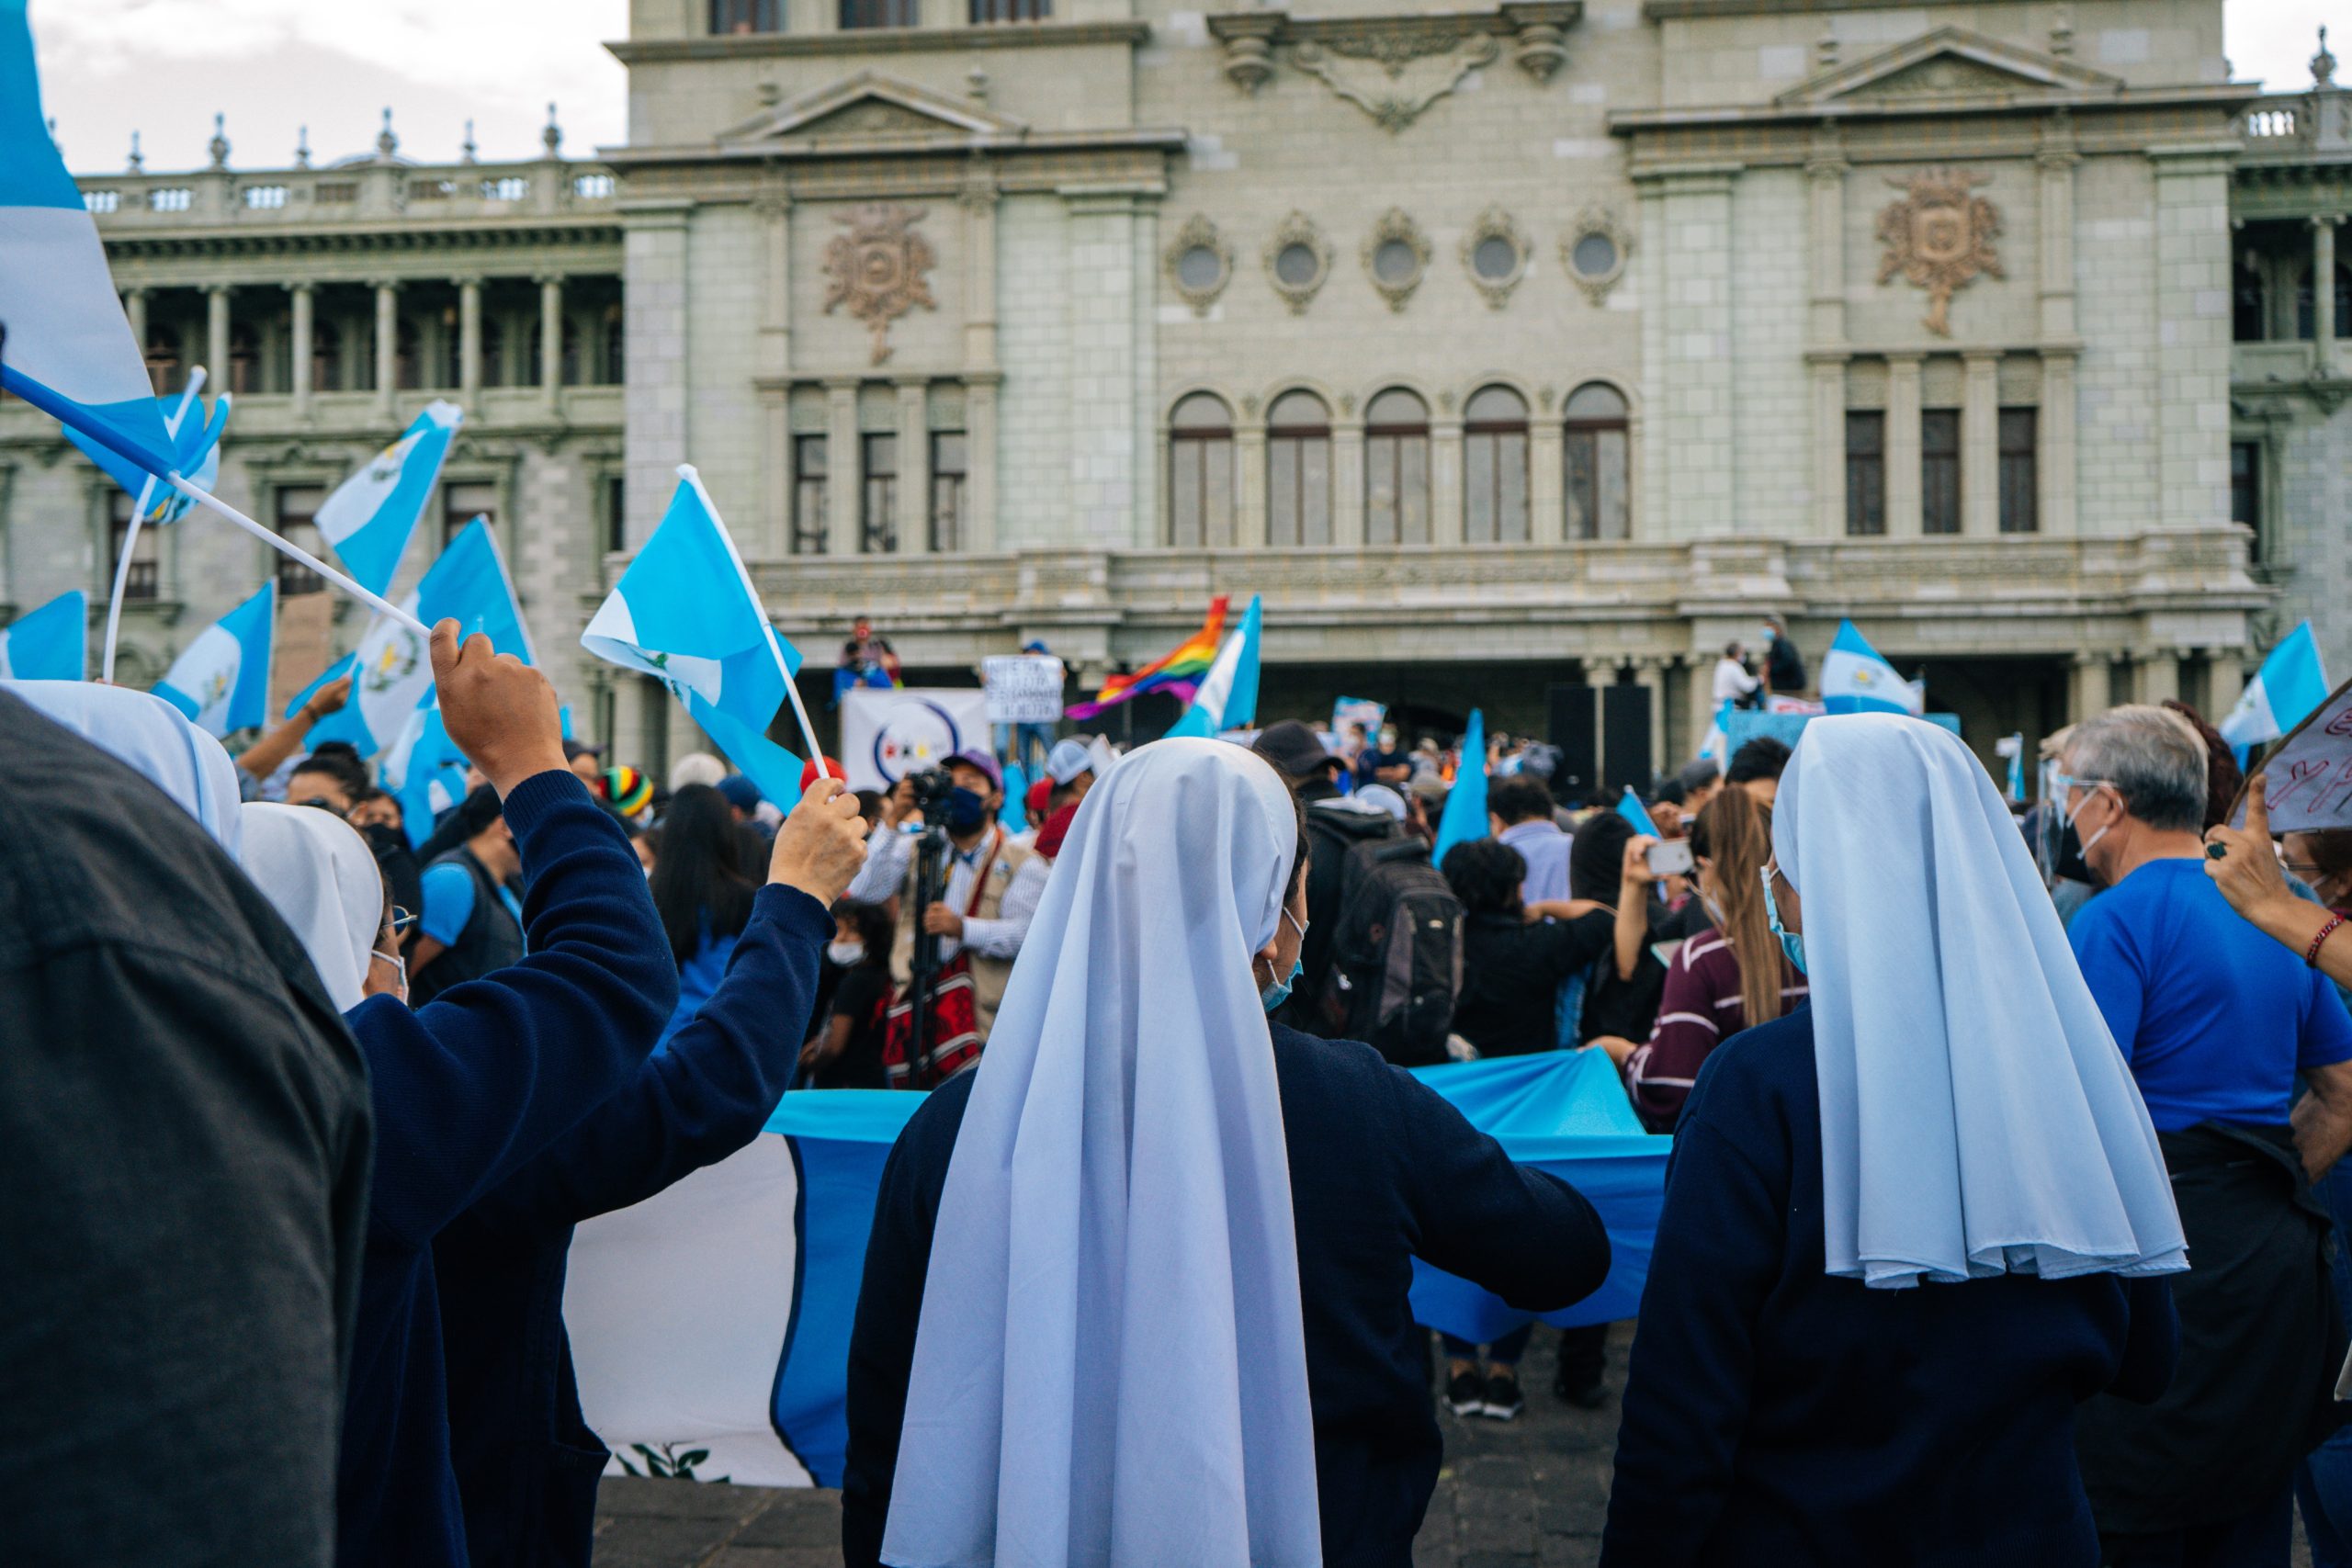 Guatemalan konservatiivina tunnettu presidentti Giammattei yllätti kumoamalla samansukupuolisten avioliitot kieltävän lakialoitteen veto-oikeudellaan